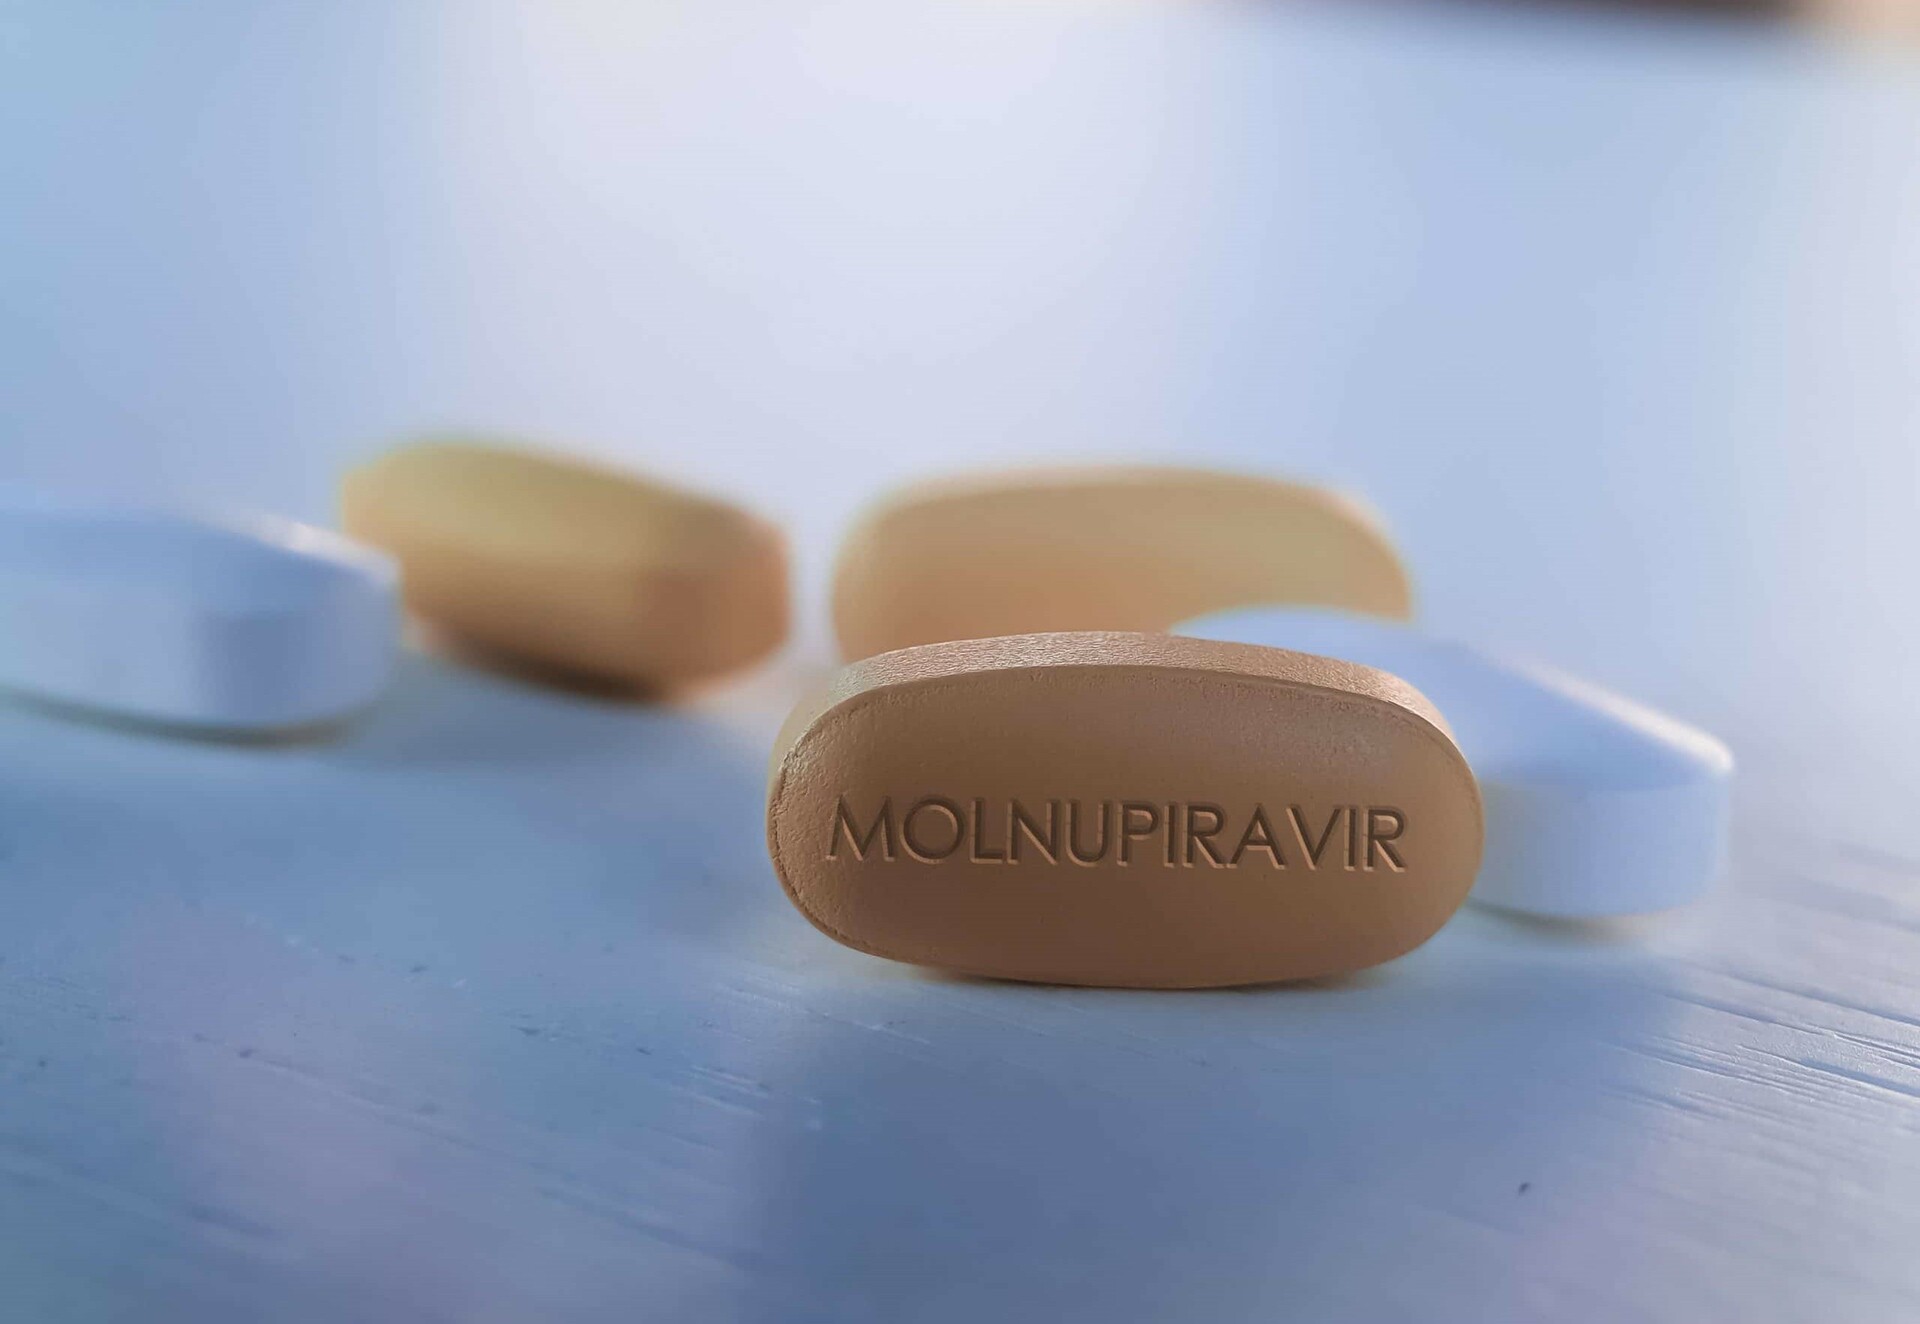 Tratamiento antiCOVID con Molnupiravir no reduce la mortalidad, pero acelera recuperación